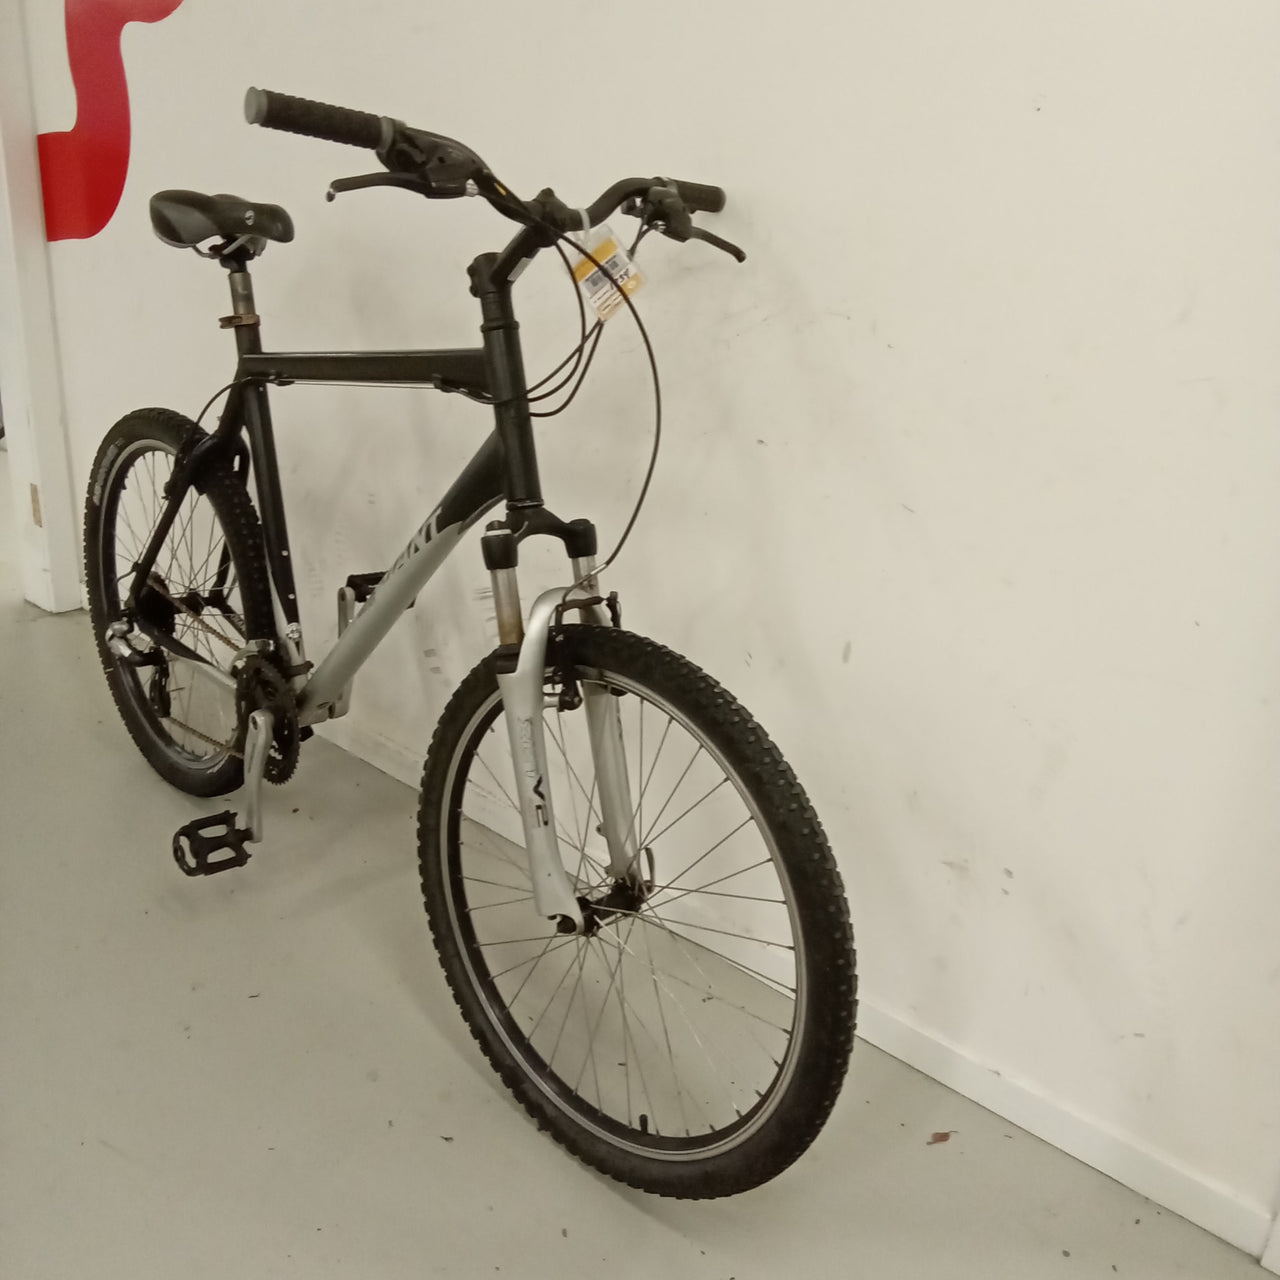 1734 - 60cm Black,
Silver, Mountain Bike, Bike